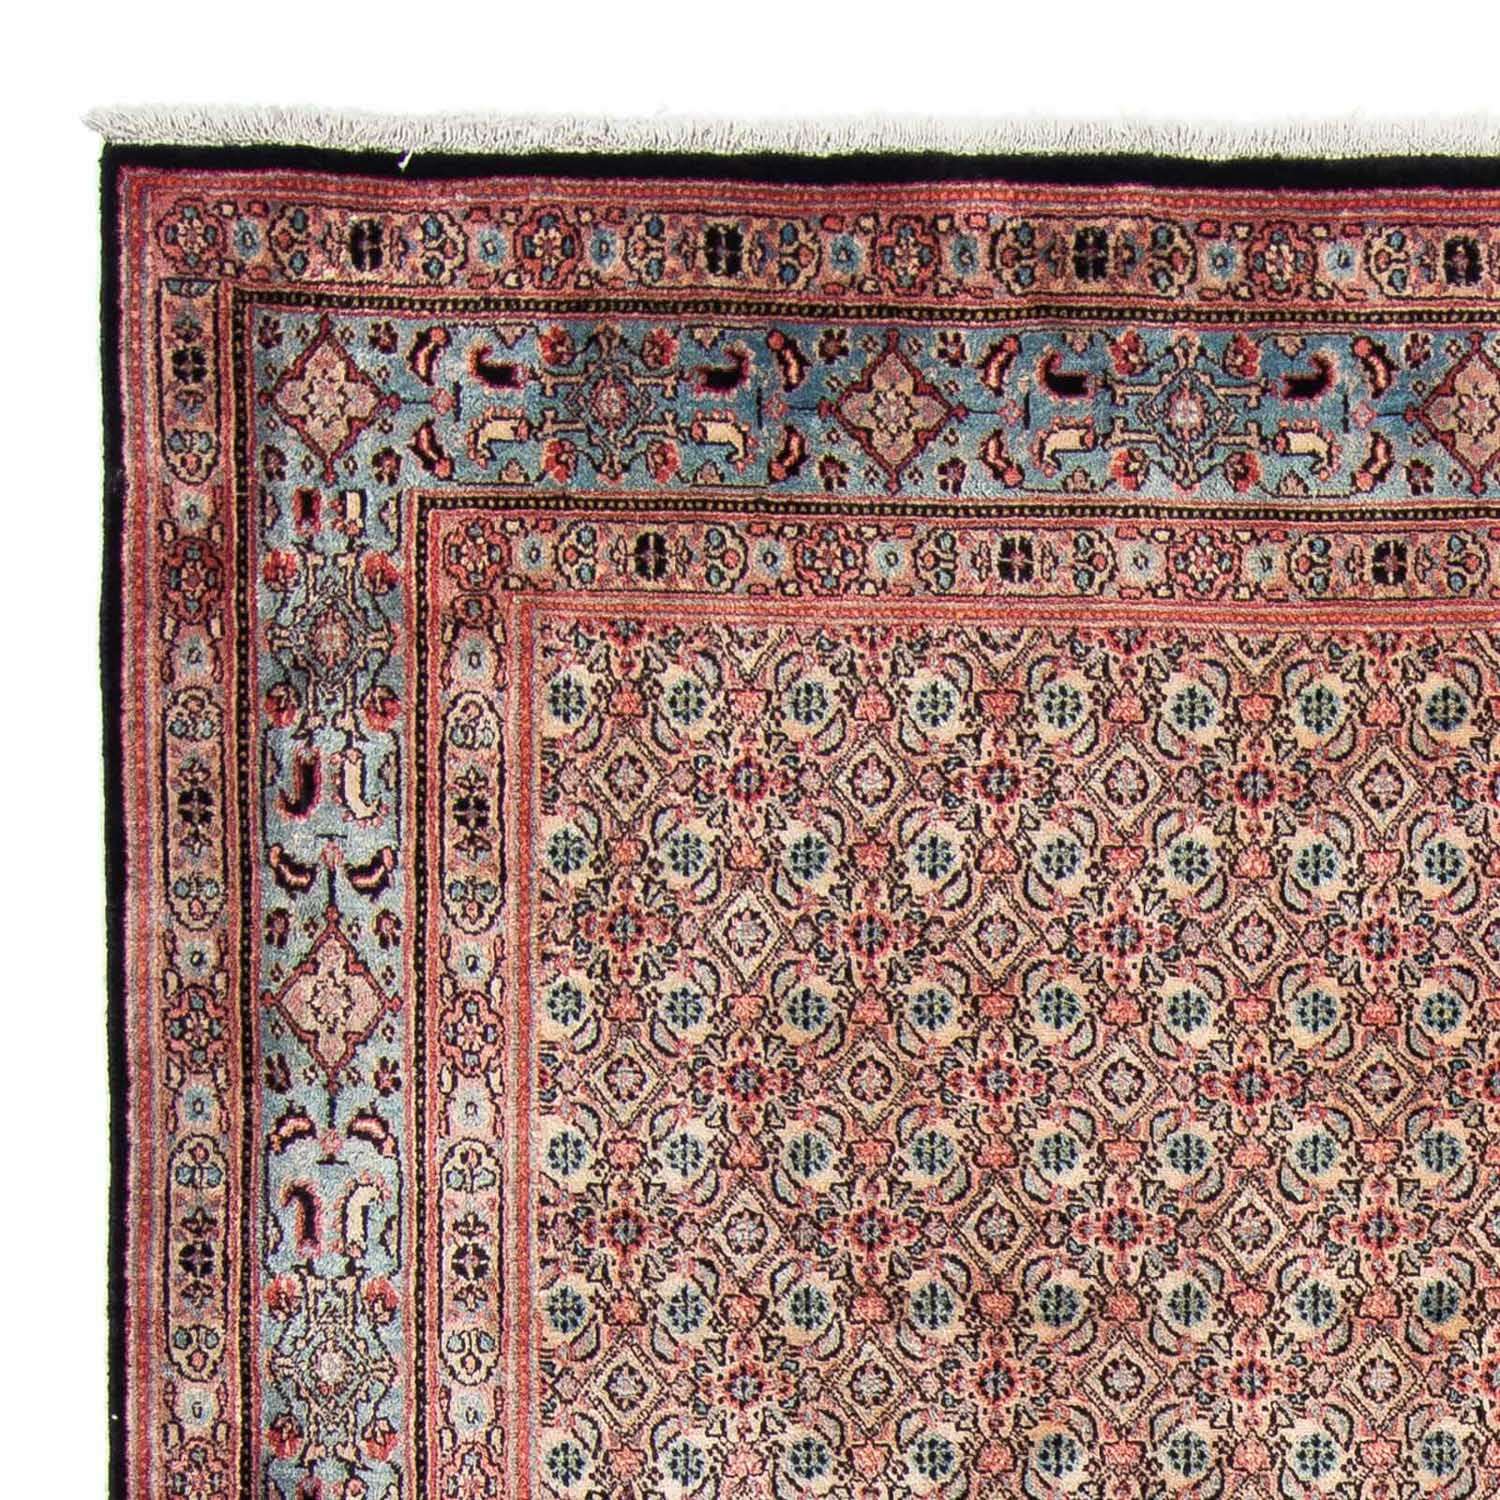 Persisk teppe - klassisk - 296 x 207 cm - lys rød